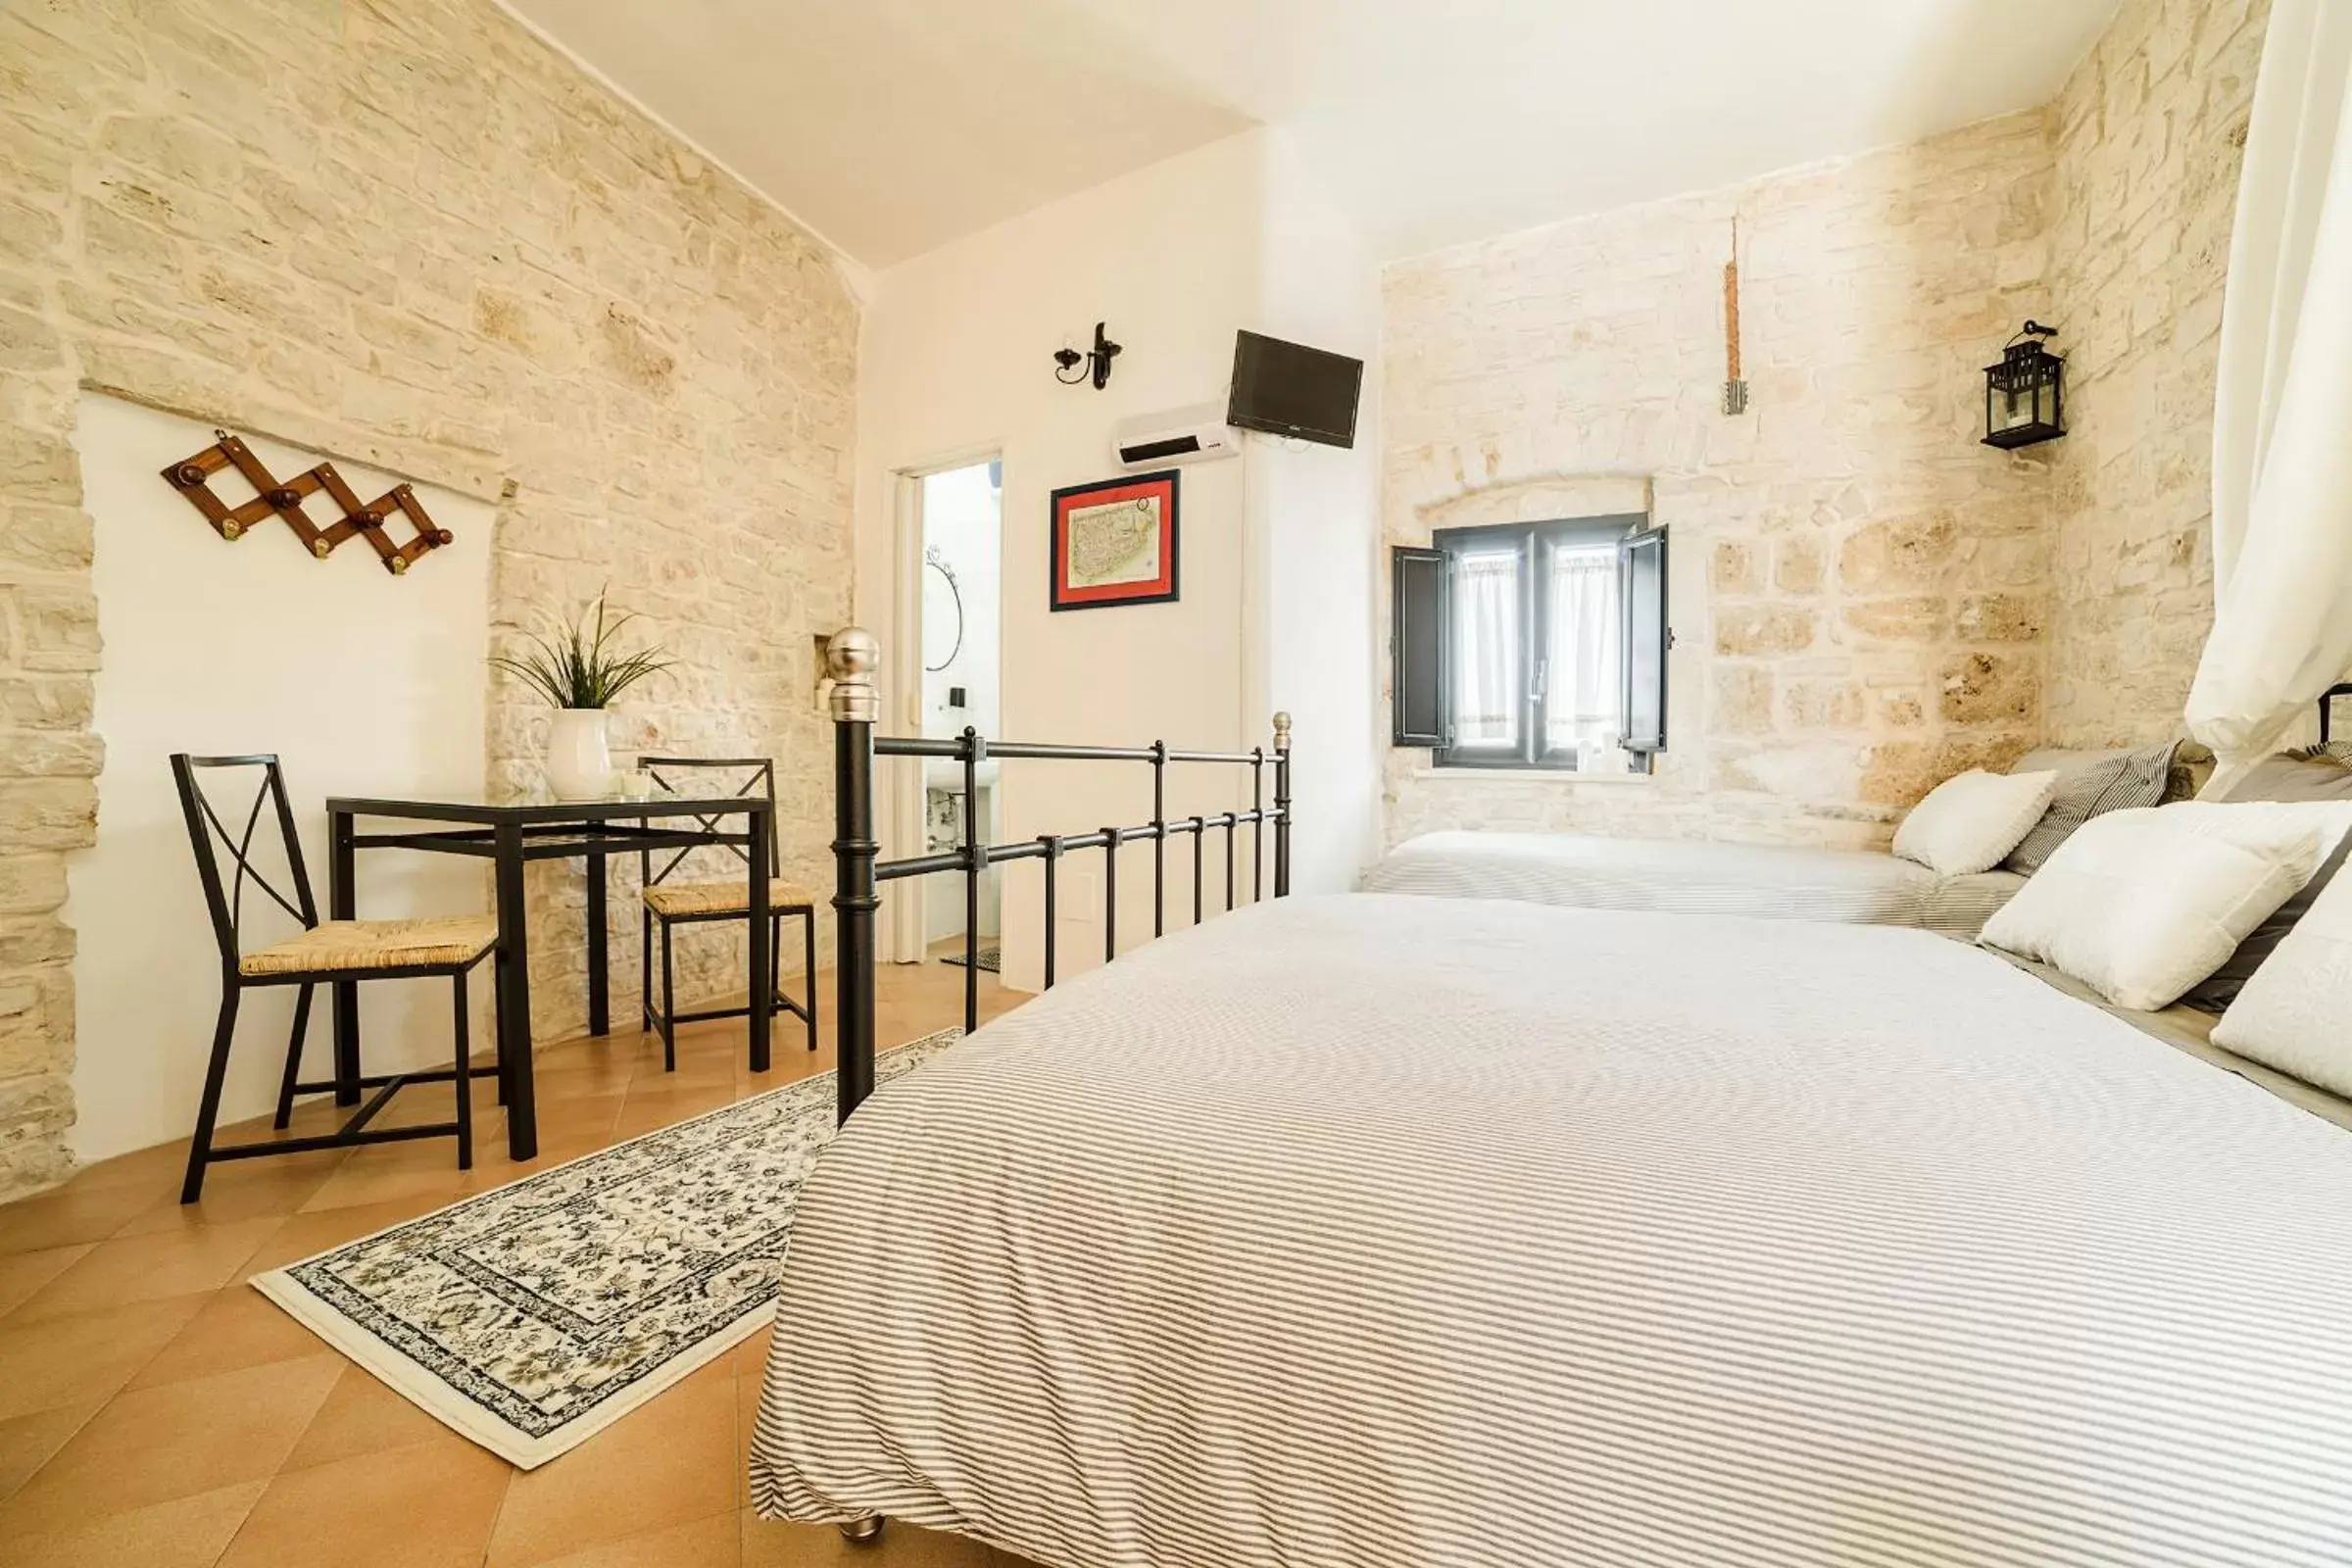 Bed, Room Photo in La Torre Storica